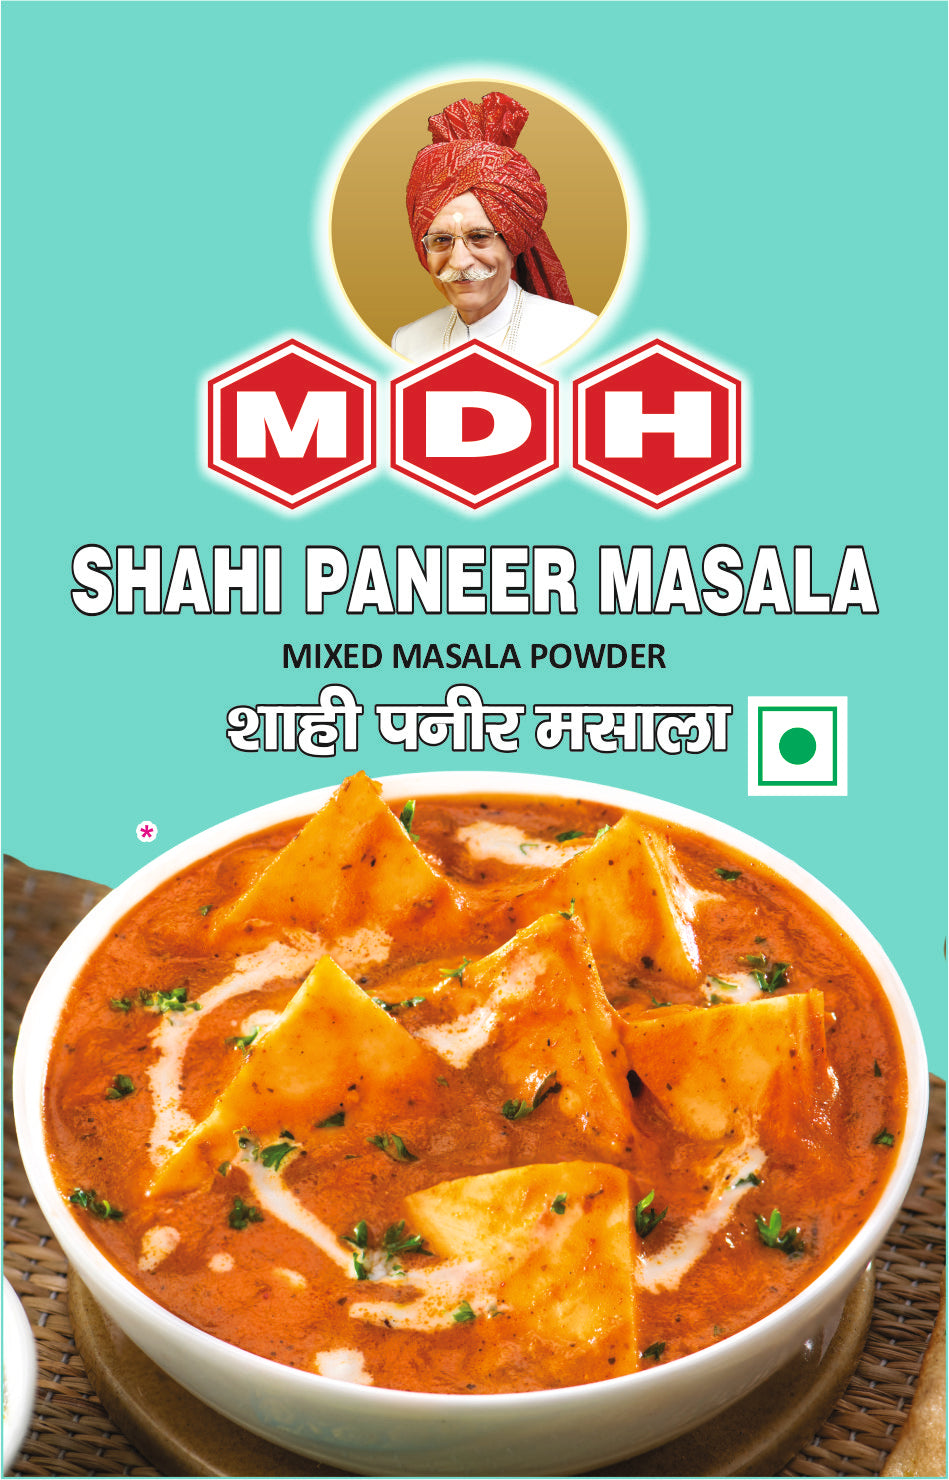 MDH-Shahi Paneer Masala-100g